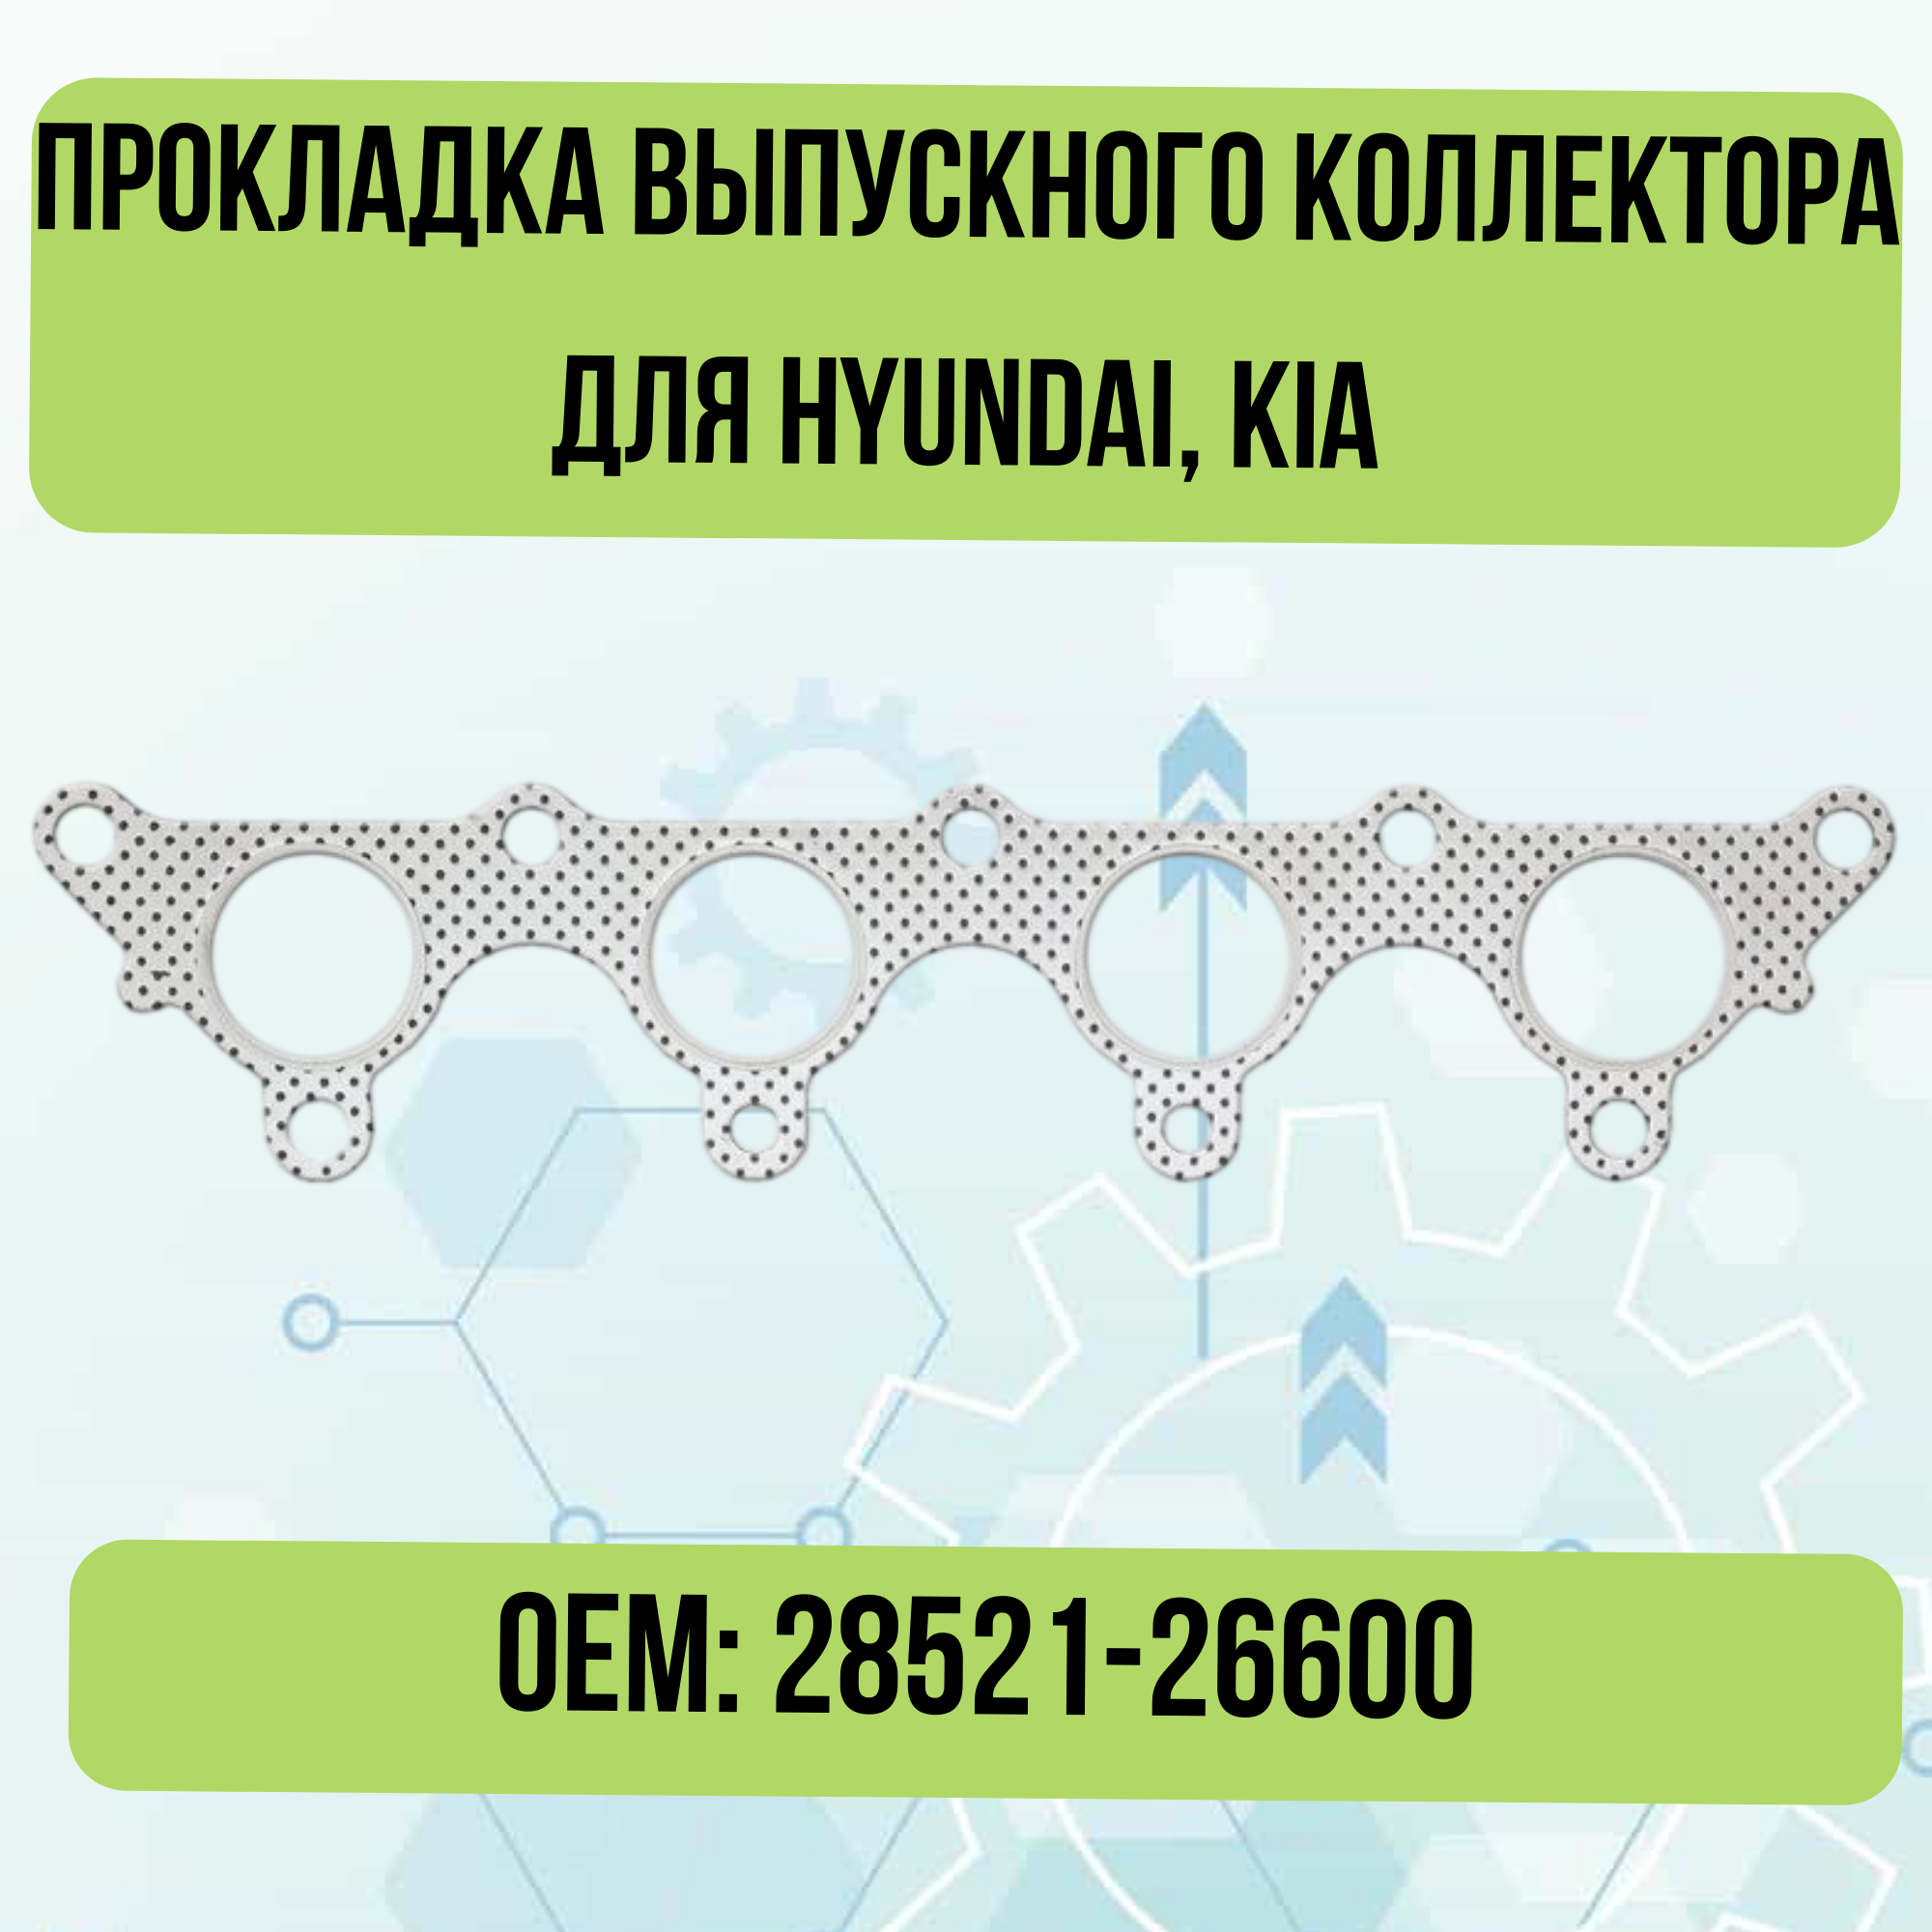 Прокладка выпускного коллектора для Hyundai, Kia 28521-26600